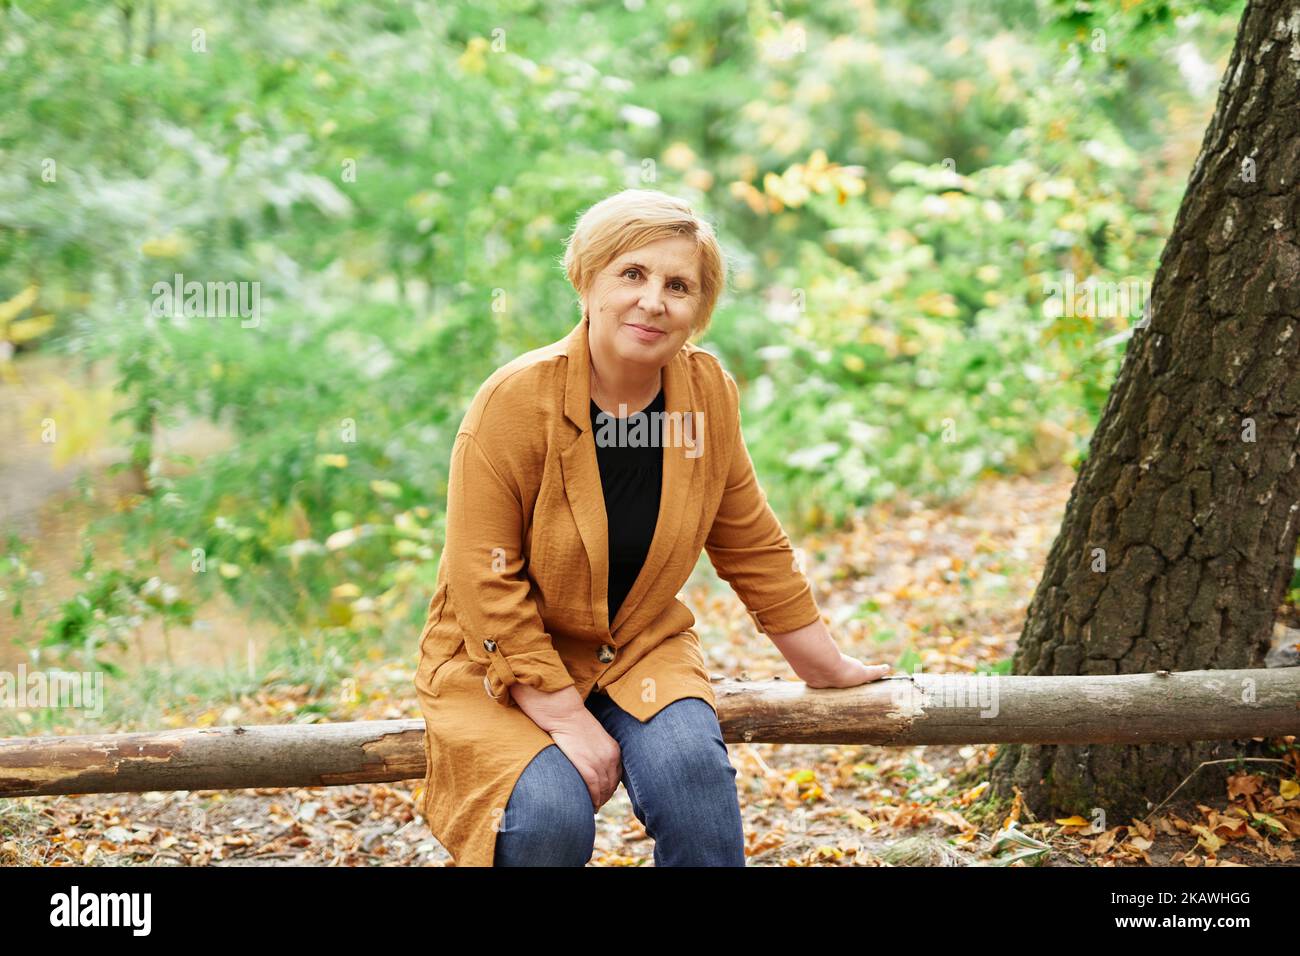 Chute de la saison ou retraite: portrait en gros plan d'une femme caucasienne sérante assise sur une bûche en bois dans un parc d'automne. Personnes âgées souriantes et matures appréciant la nature. Photo de haute qualité Banque D'Images